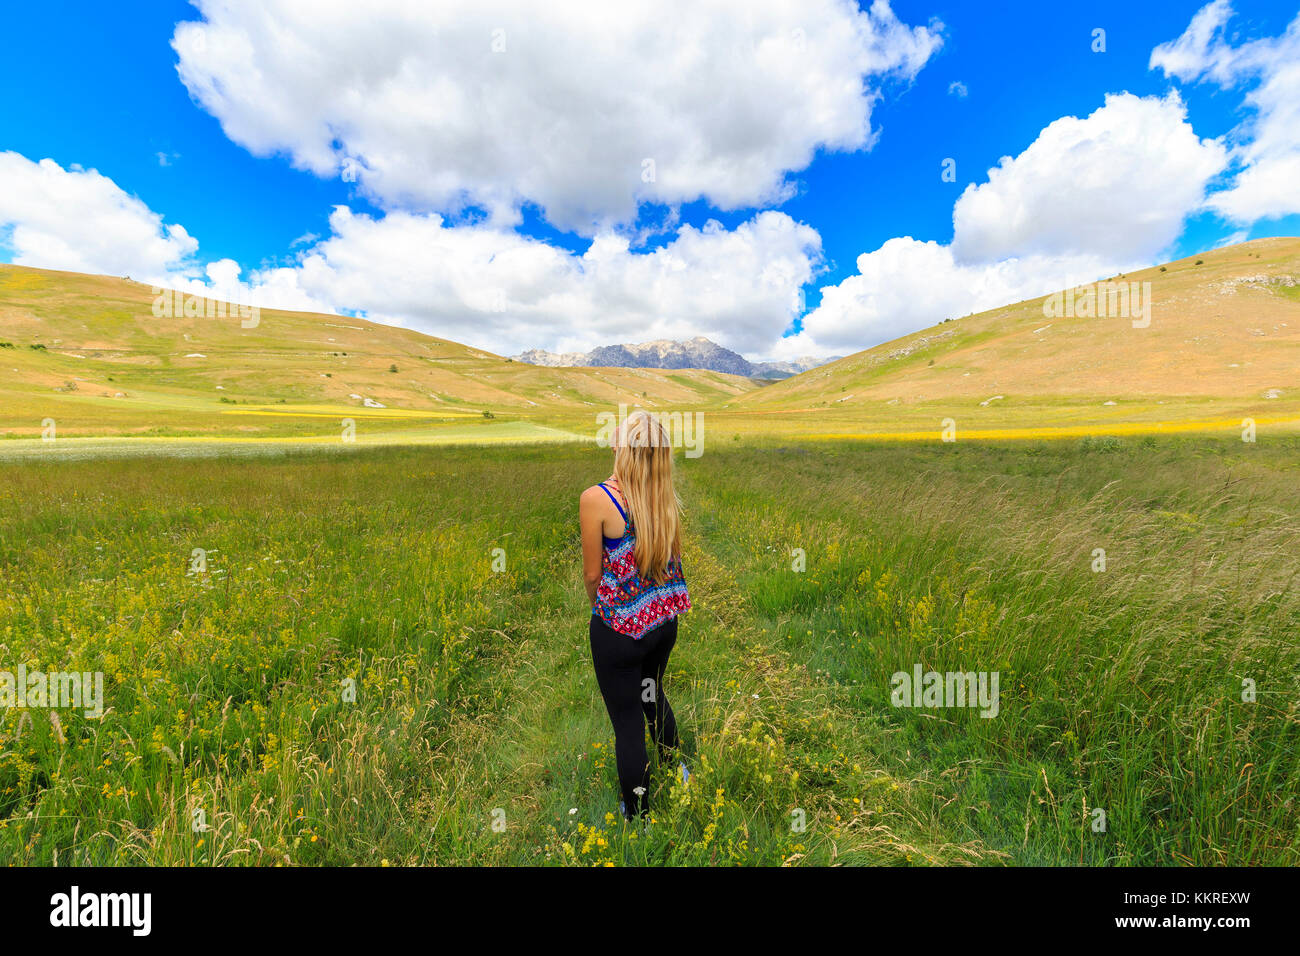 Giovane ragazza guarda le nuvole sopra i campi di santo Stefano di Sessanio, Abruzzo, Italia. Foto Stock